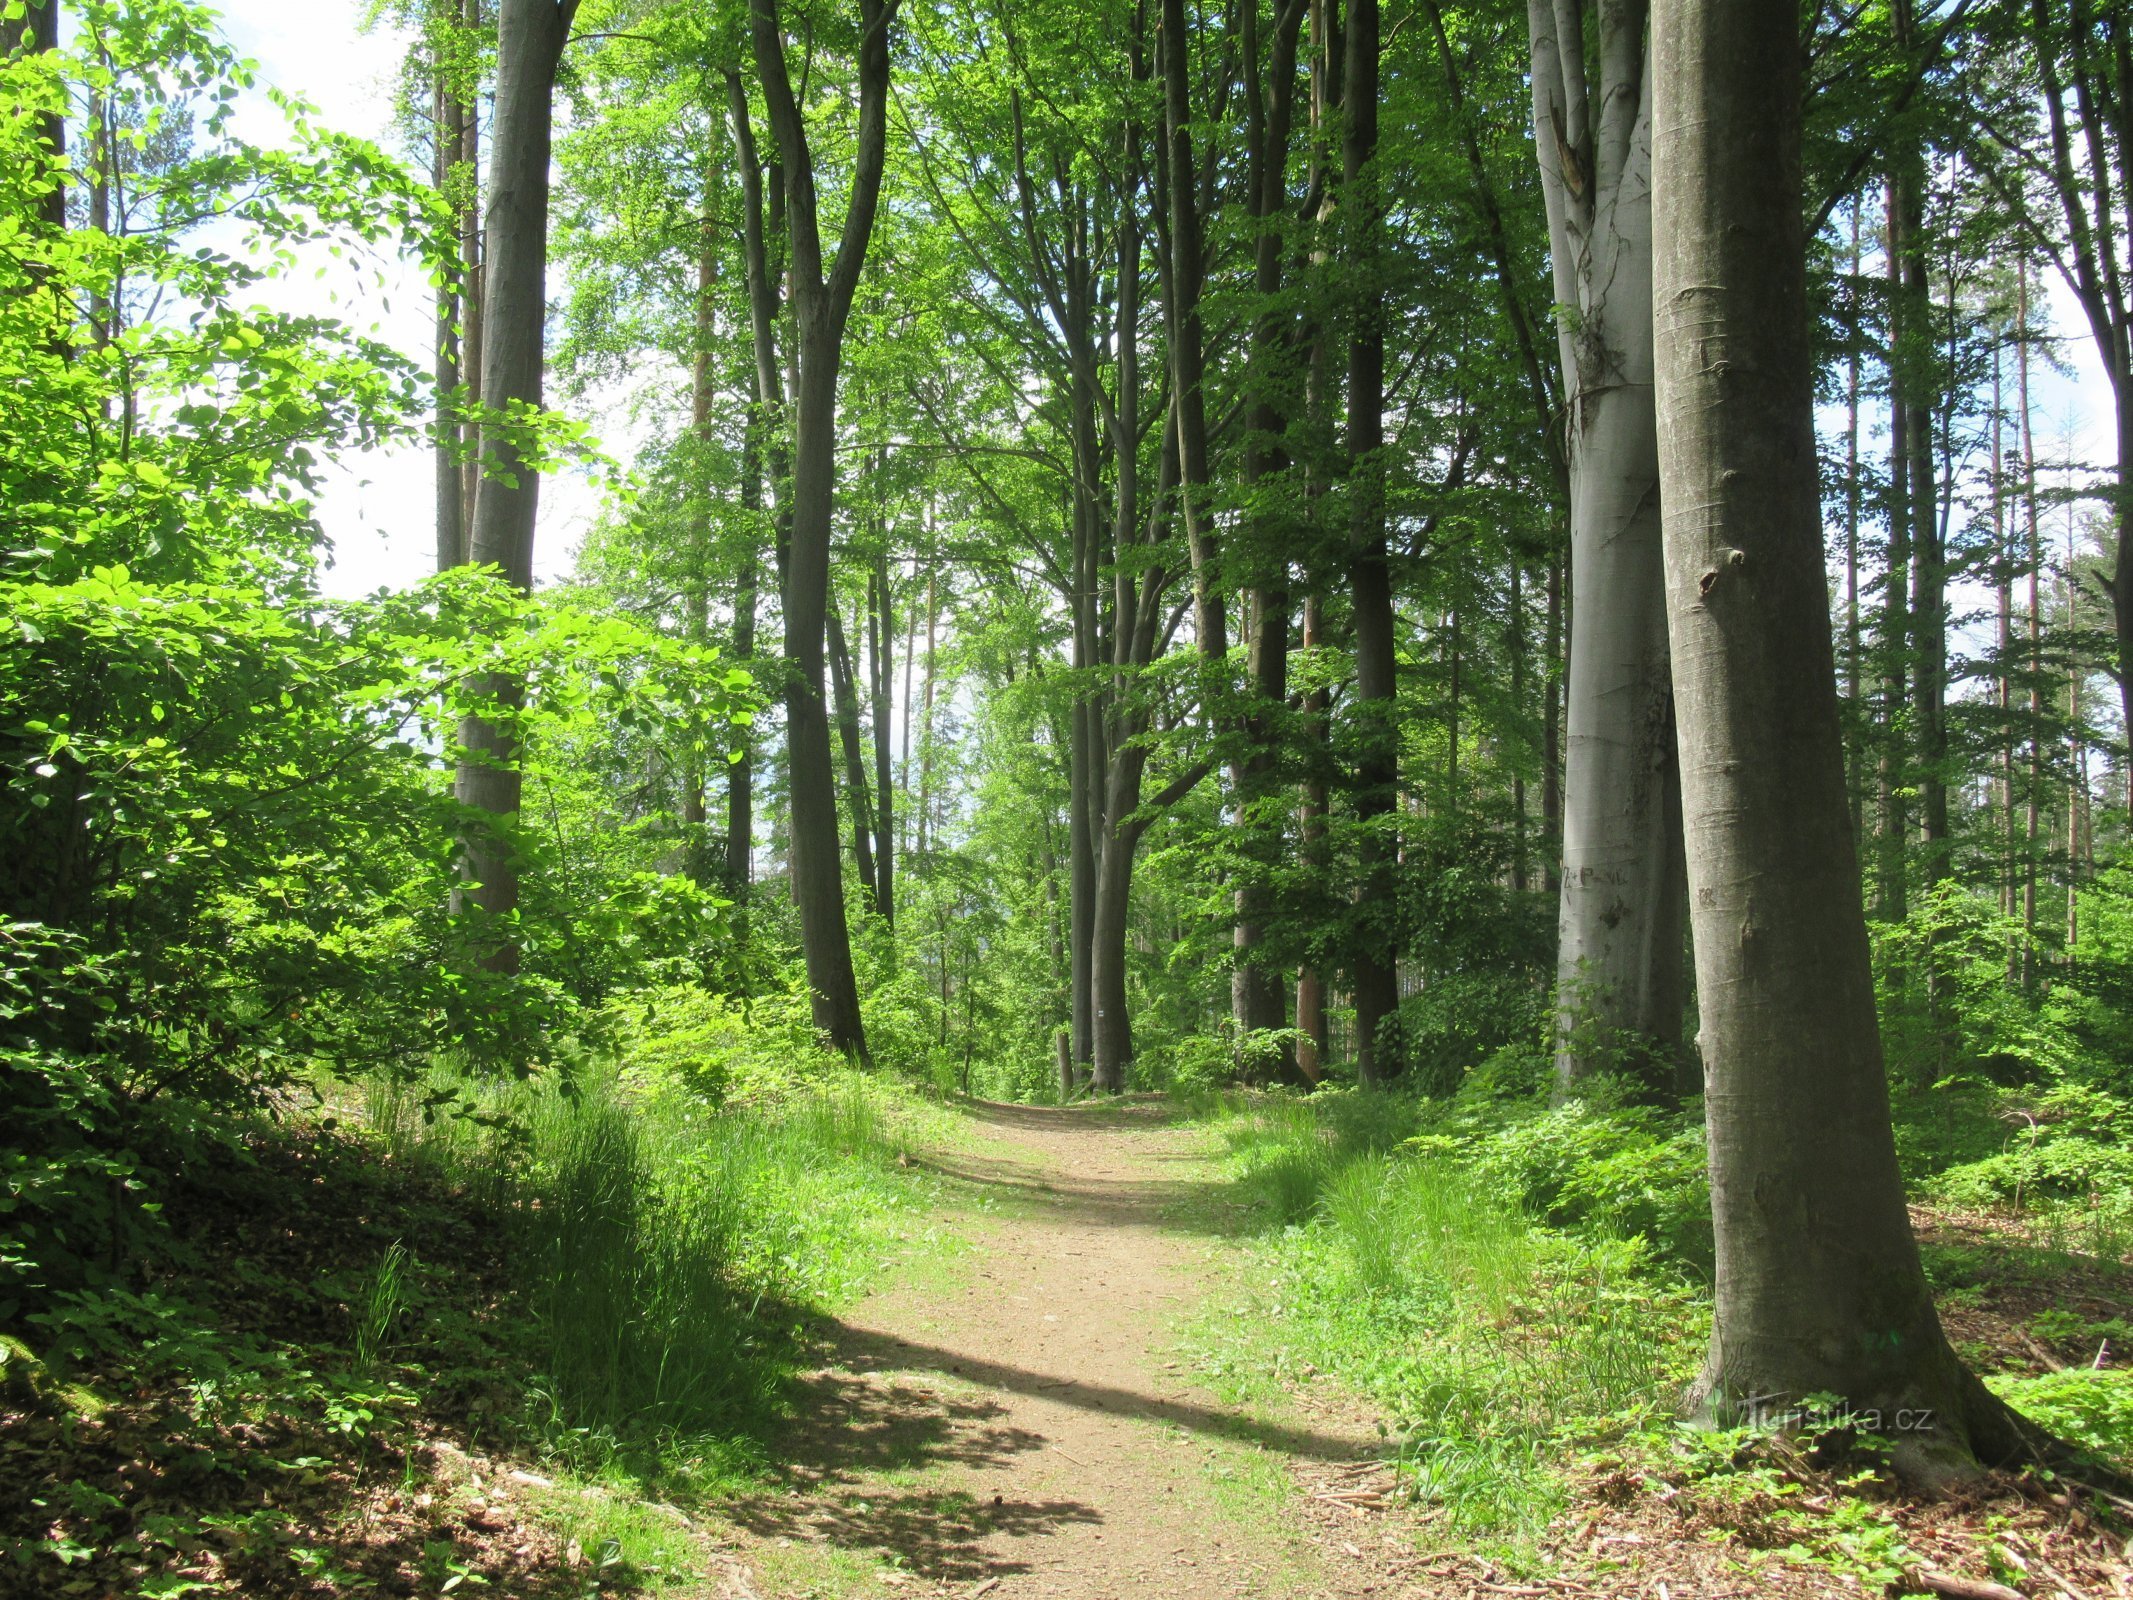 Η διαδρομή οδηγεί κυρίως μέσα από φυλλοβόλα δάση